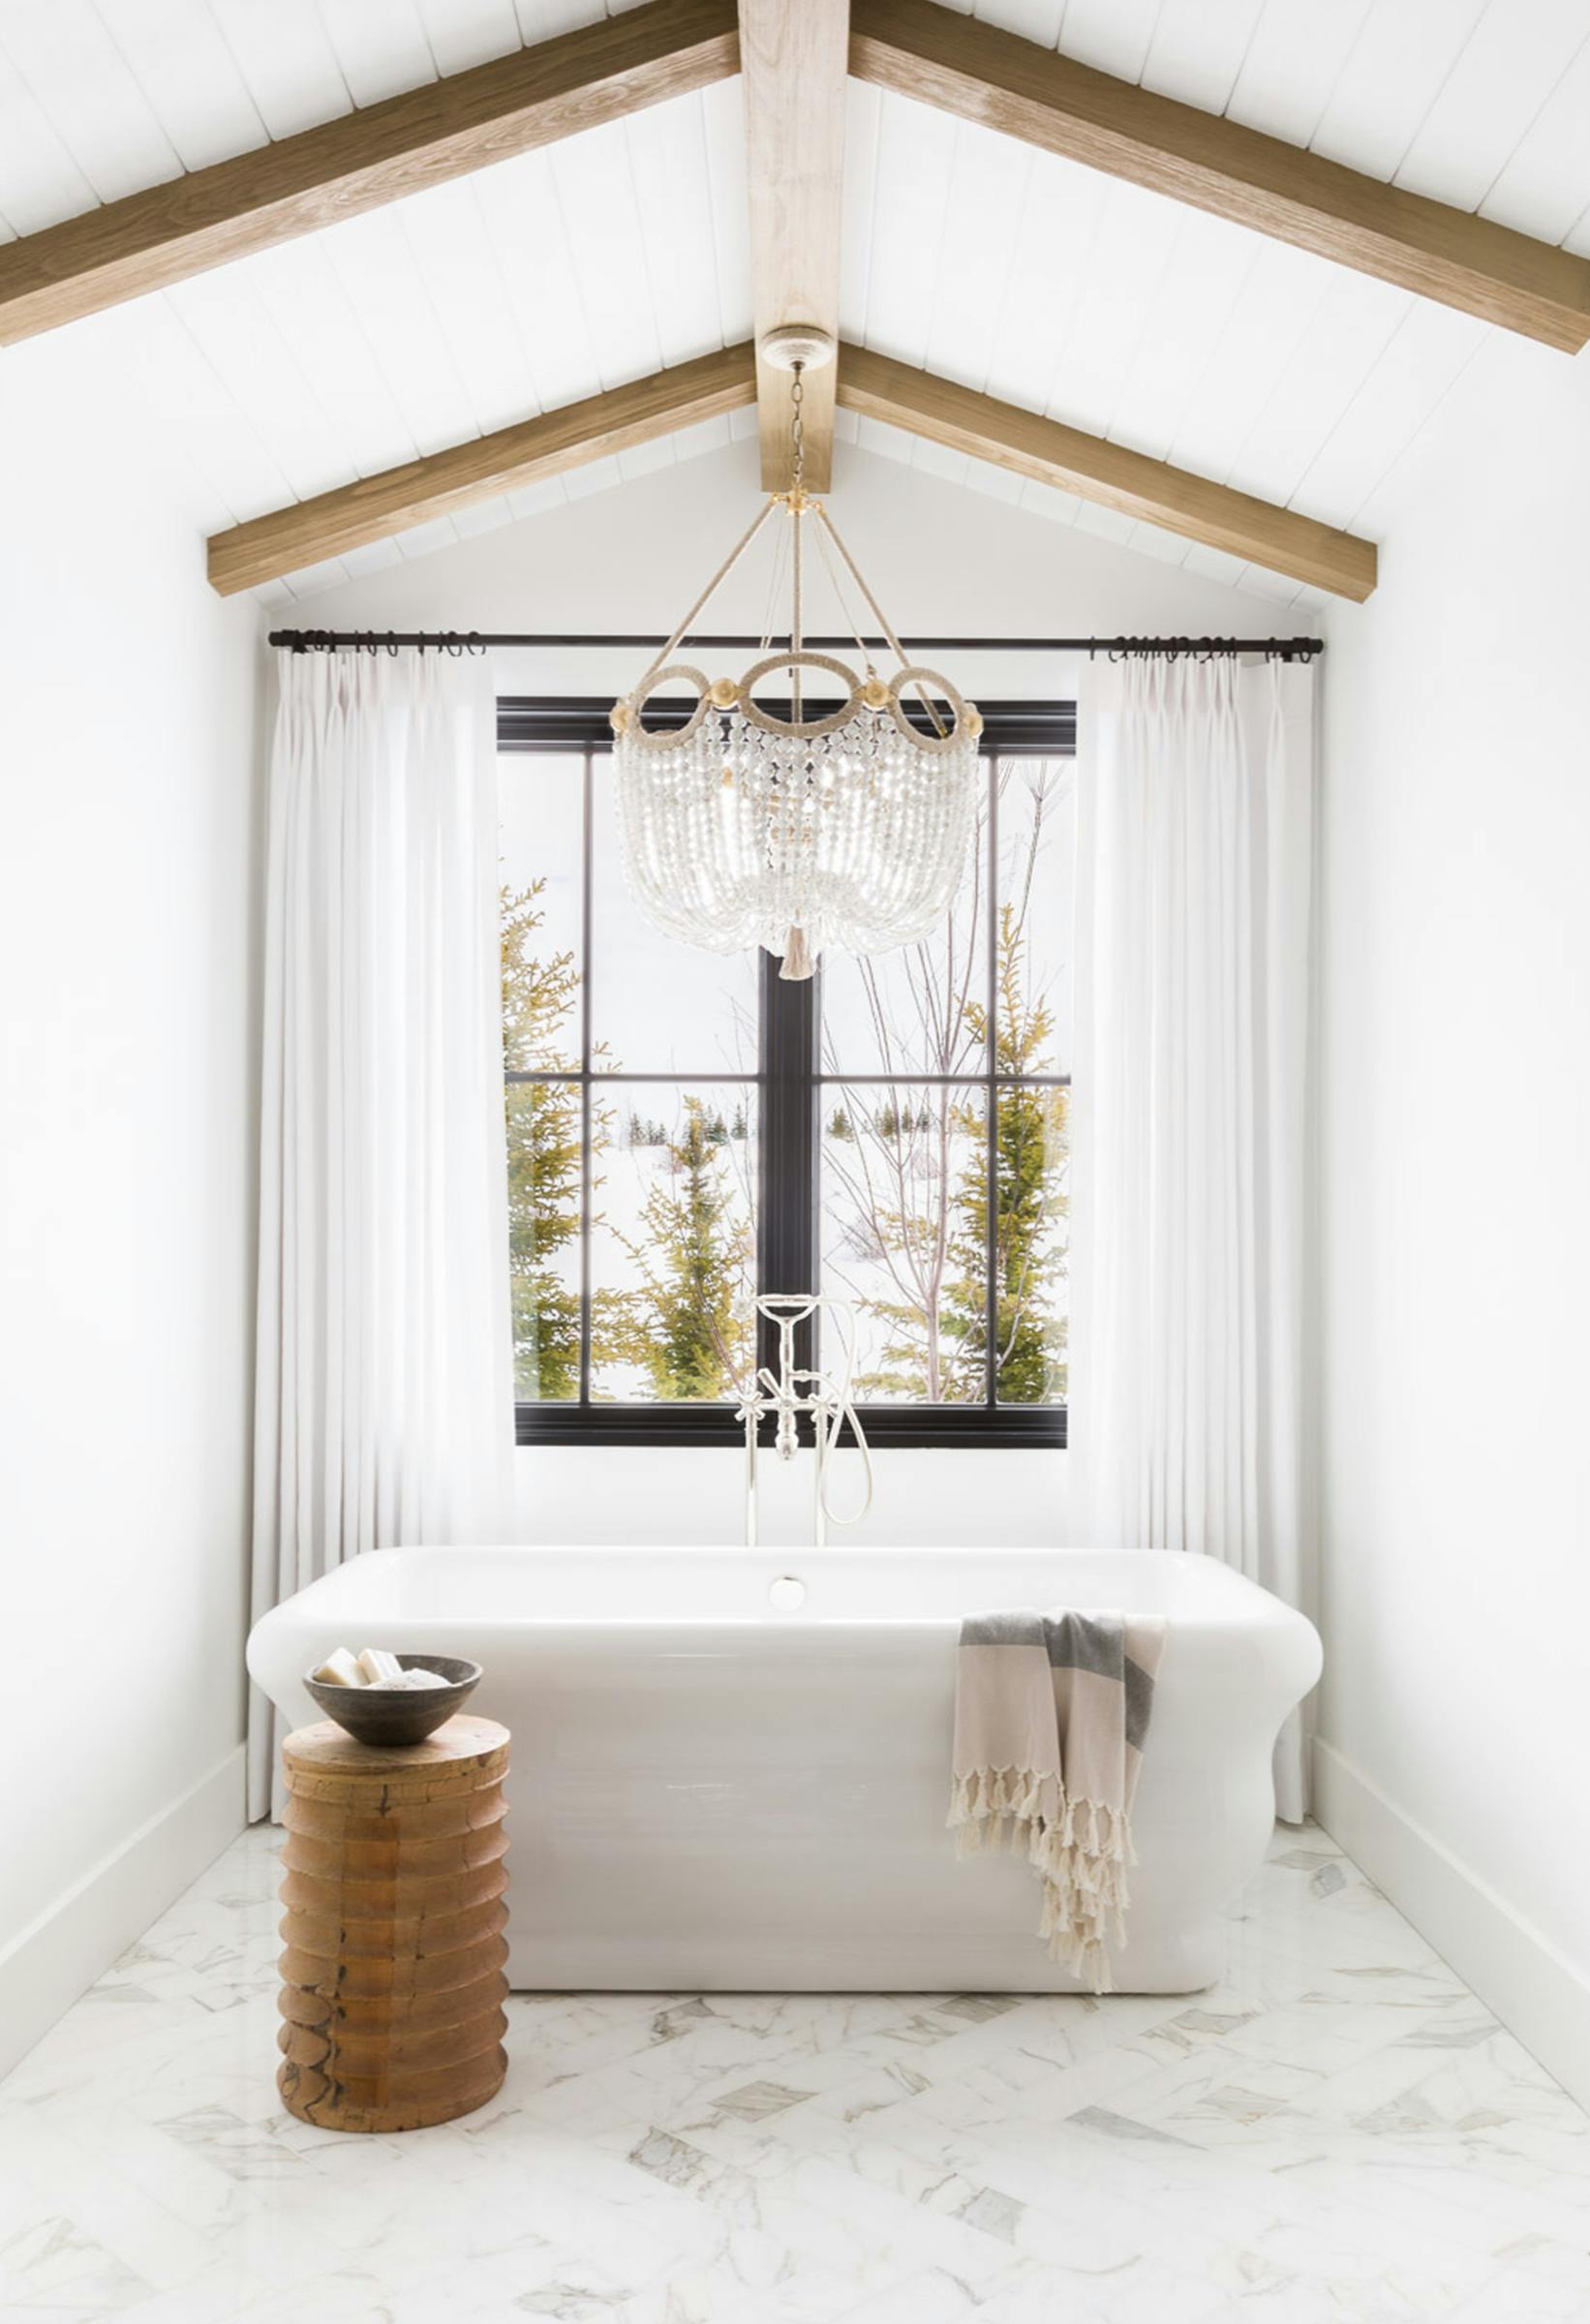 Nicole-Green-Design-Project-Refined-Mountain-Escape-Main-Bathroom-Tub